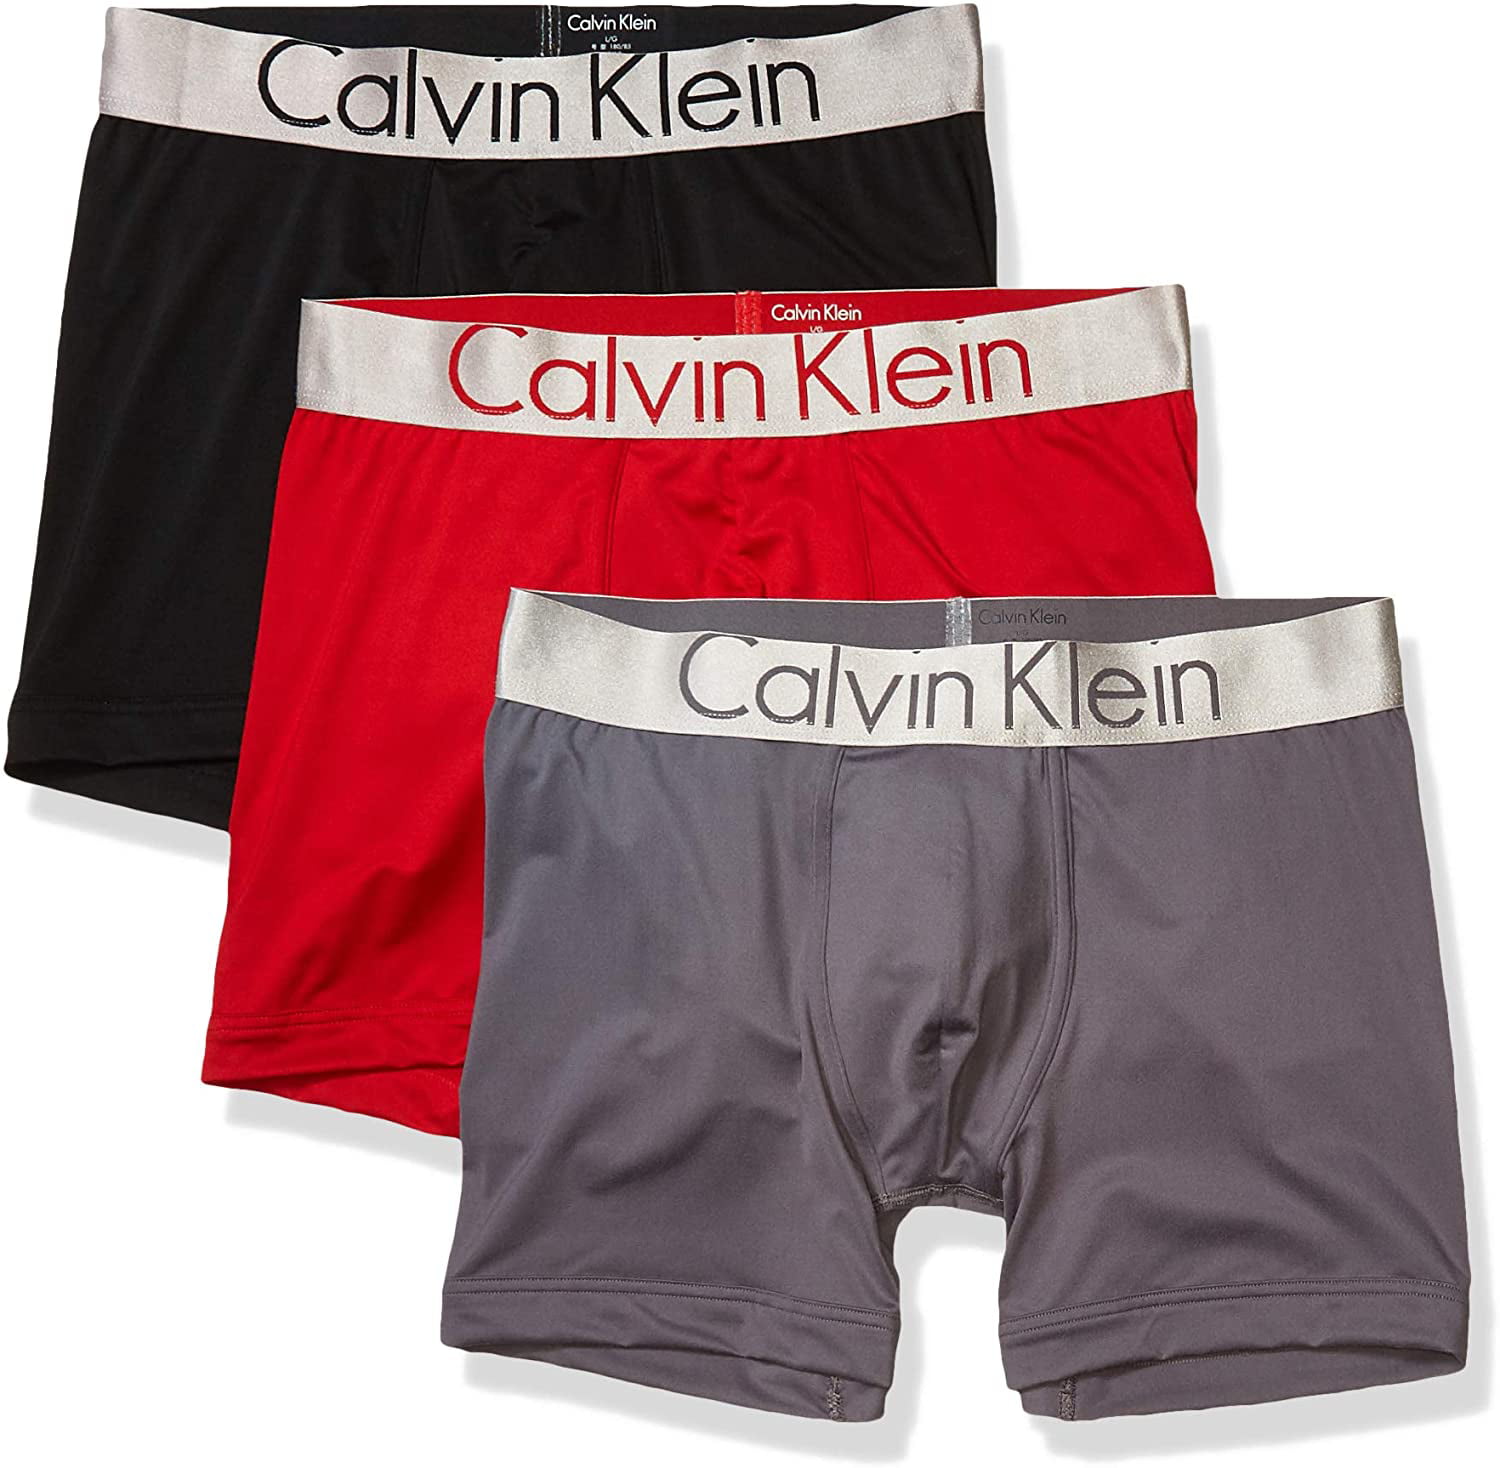 Calvin Klein Men's Underwear Steel Microfiber Boxer Briefs 3 Pack -  